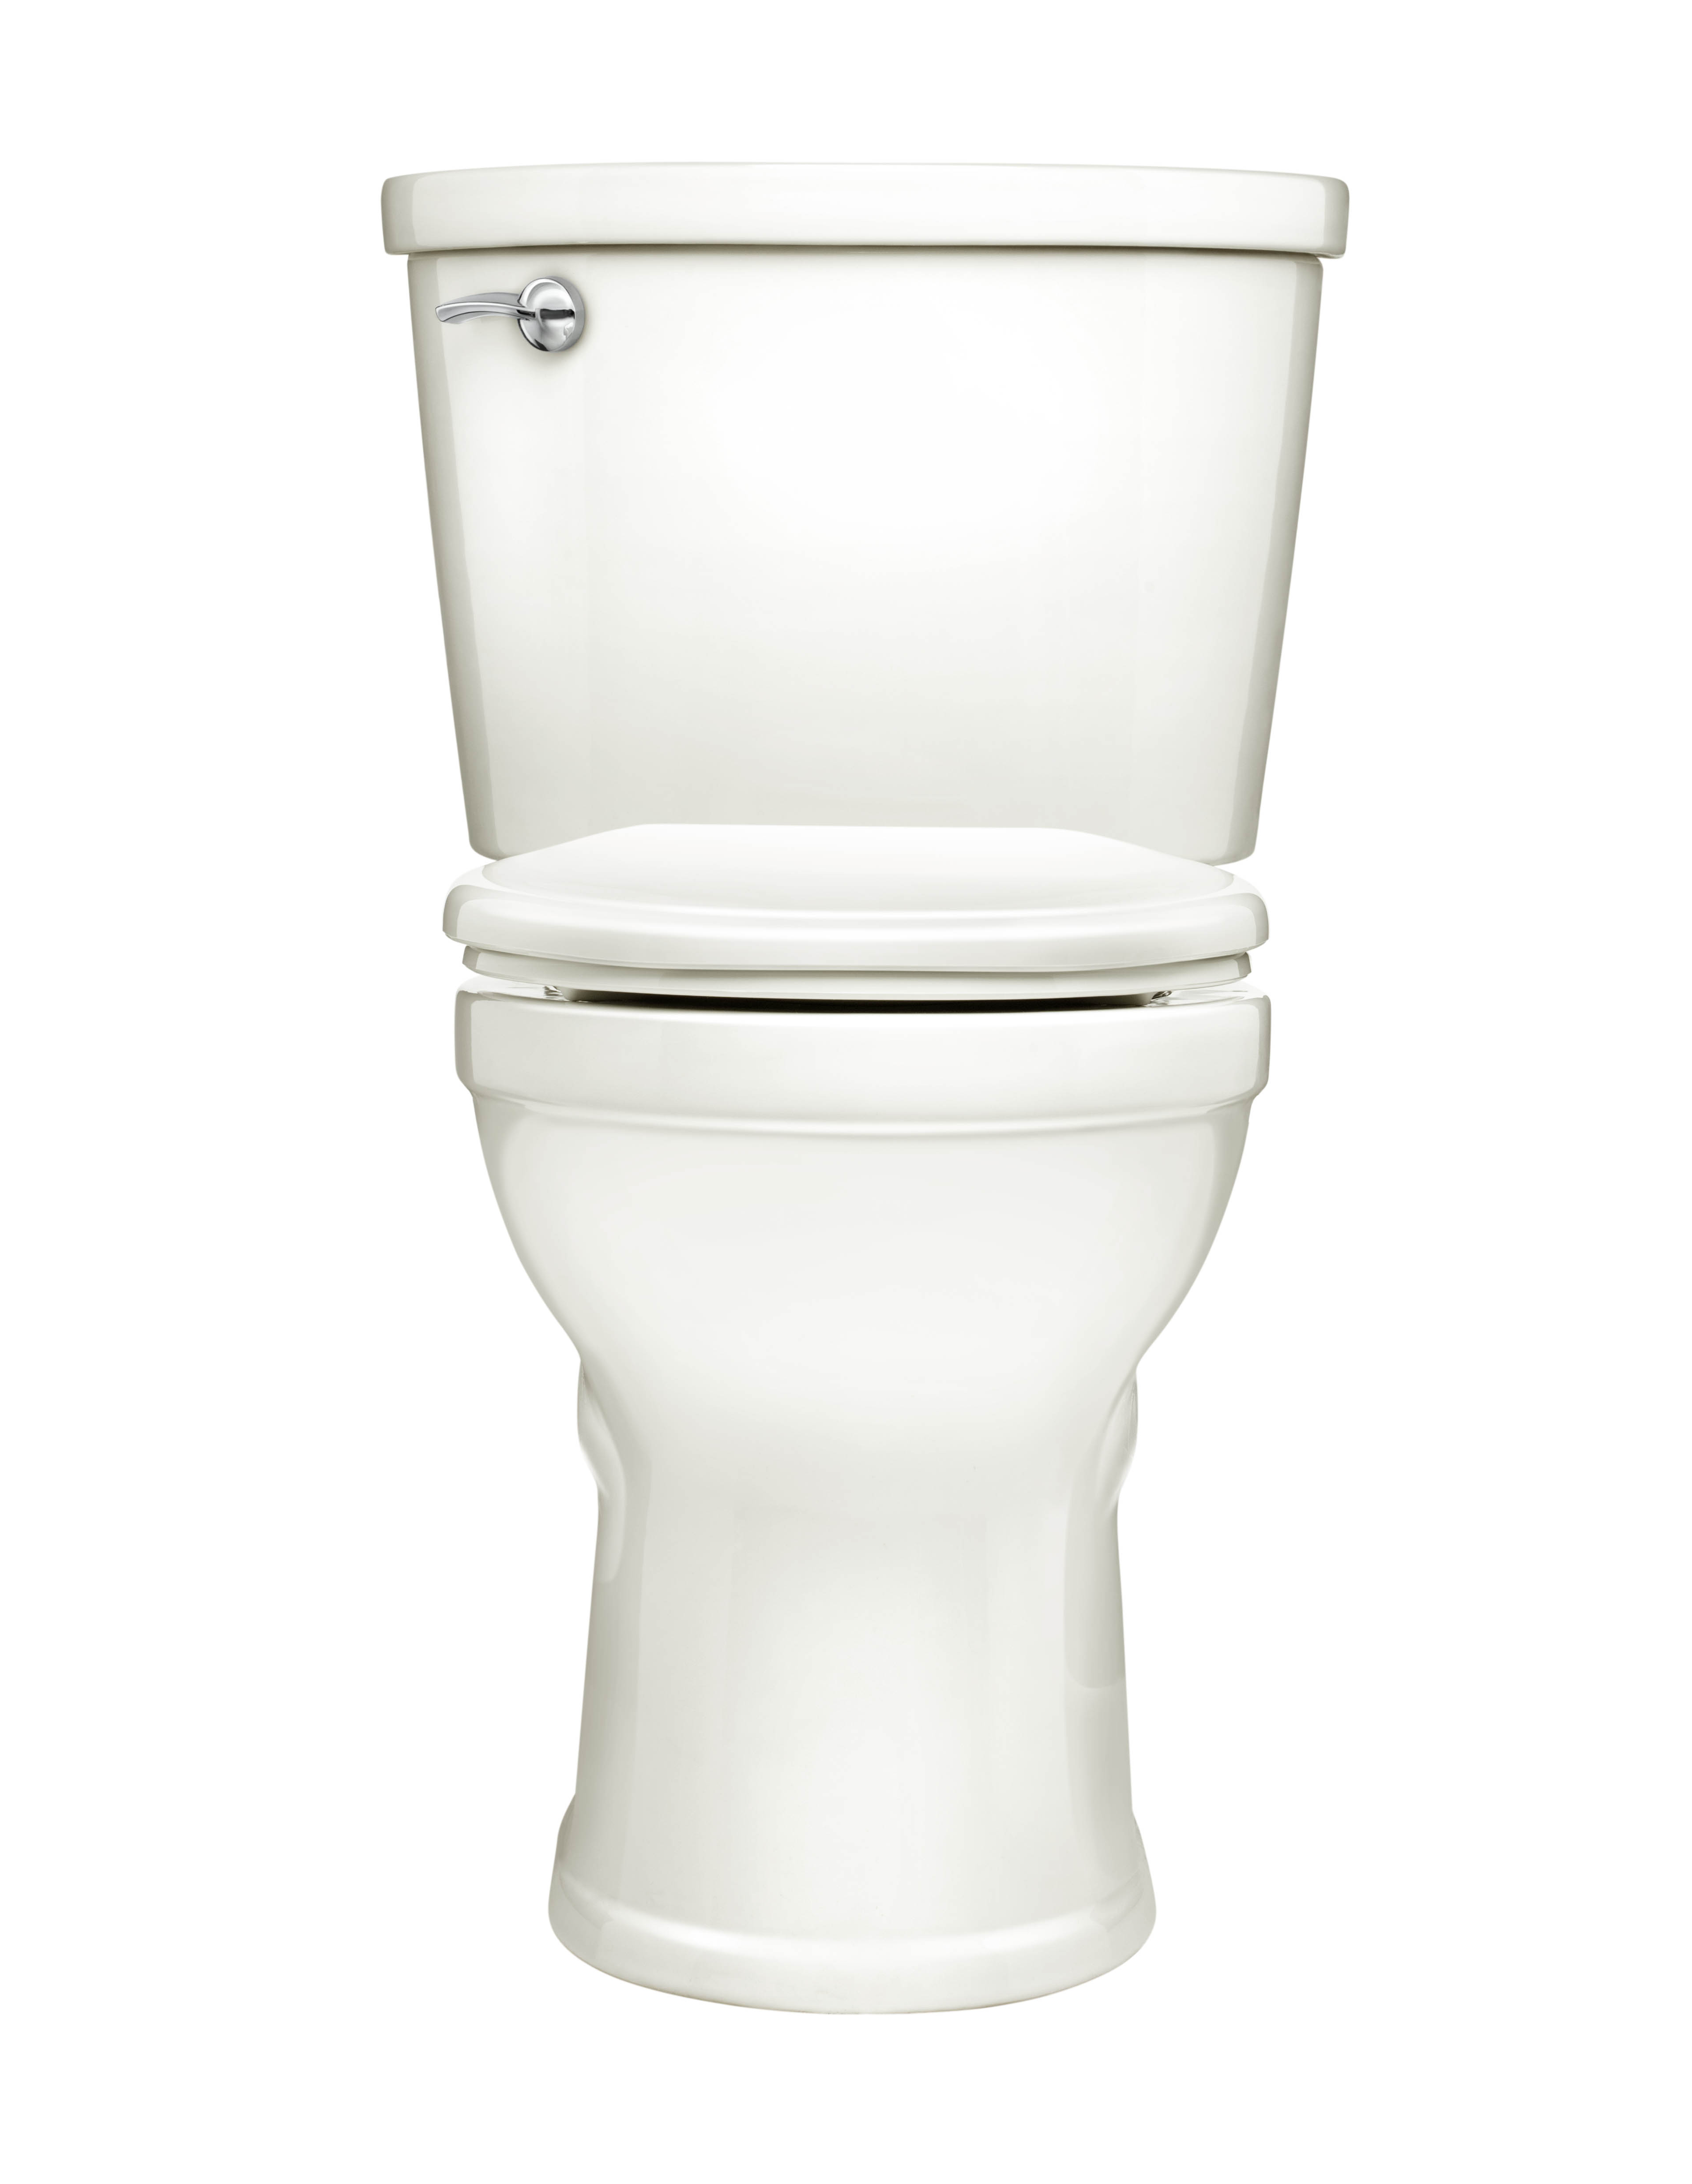 Toilette Champion PRO, 2 pièces, 1,28 gpc/4,8 lpc, à cuvette allongée à hauteur régulière, sans siège